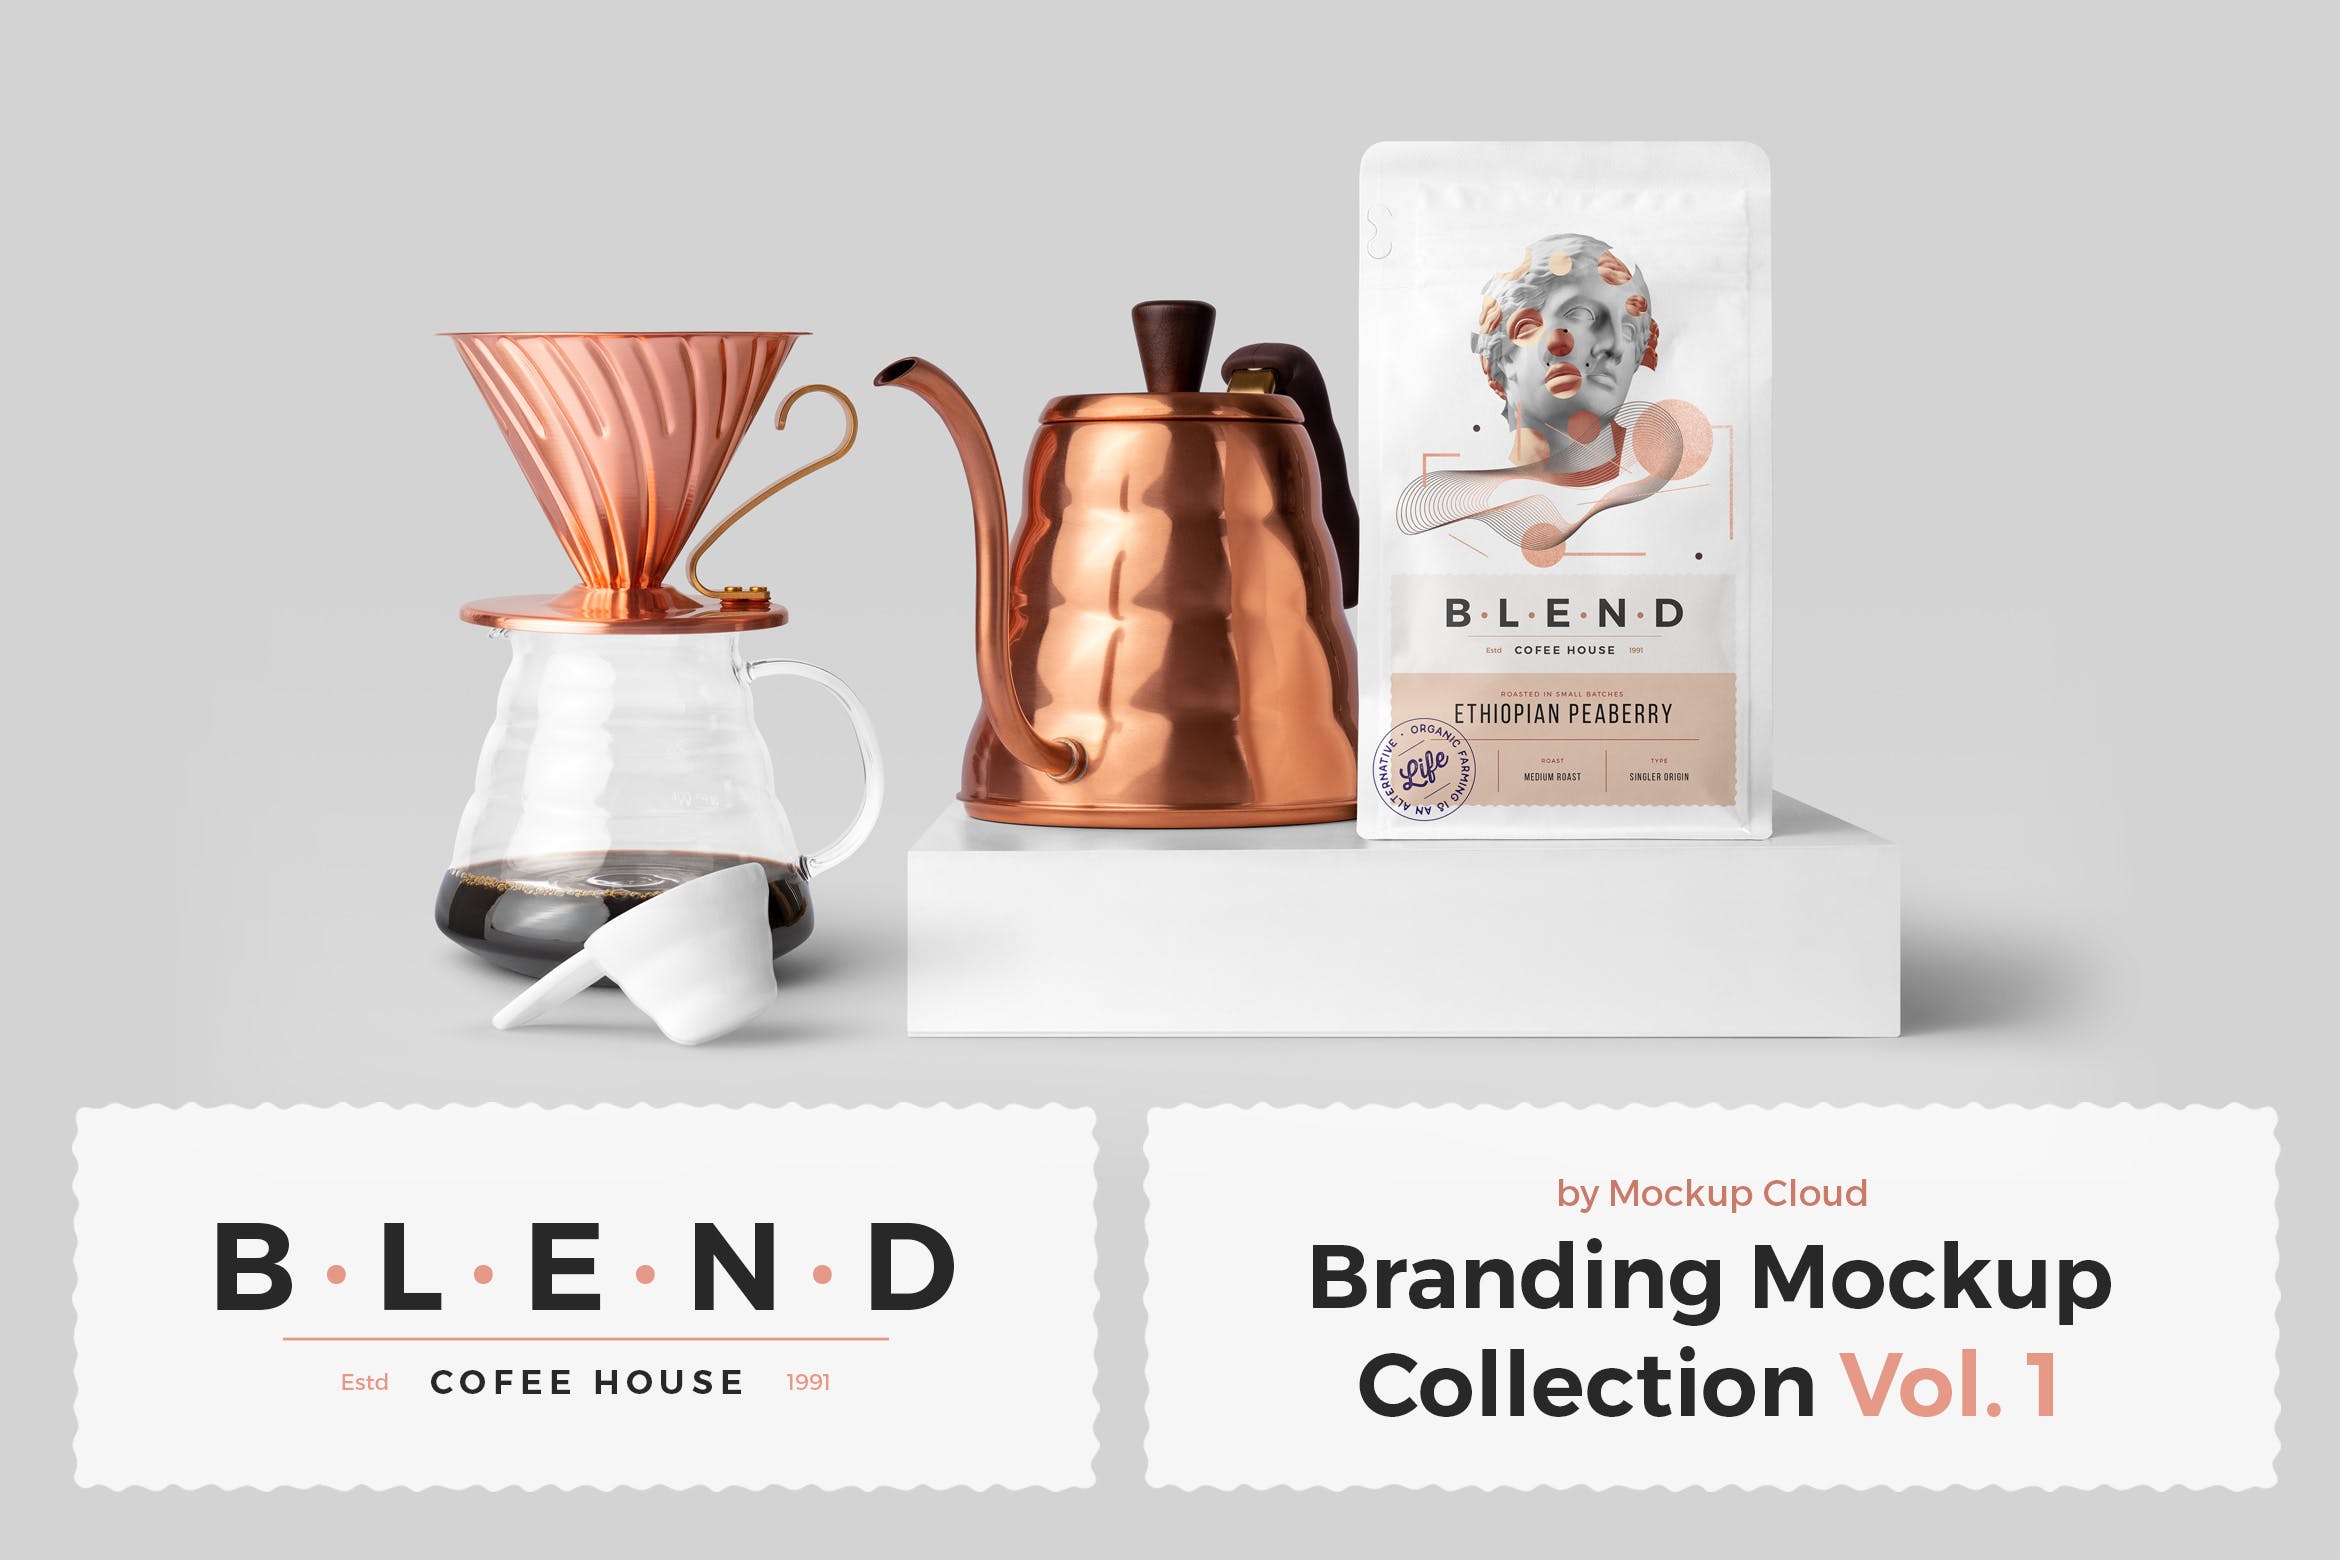 高端品牌混合咖啡馆品牌样机模版素材R4HCJUD插图